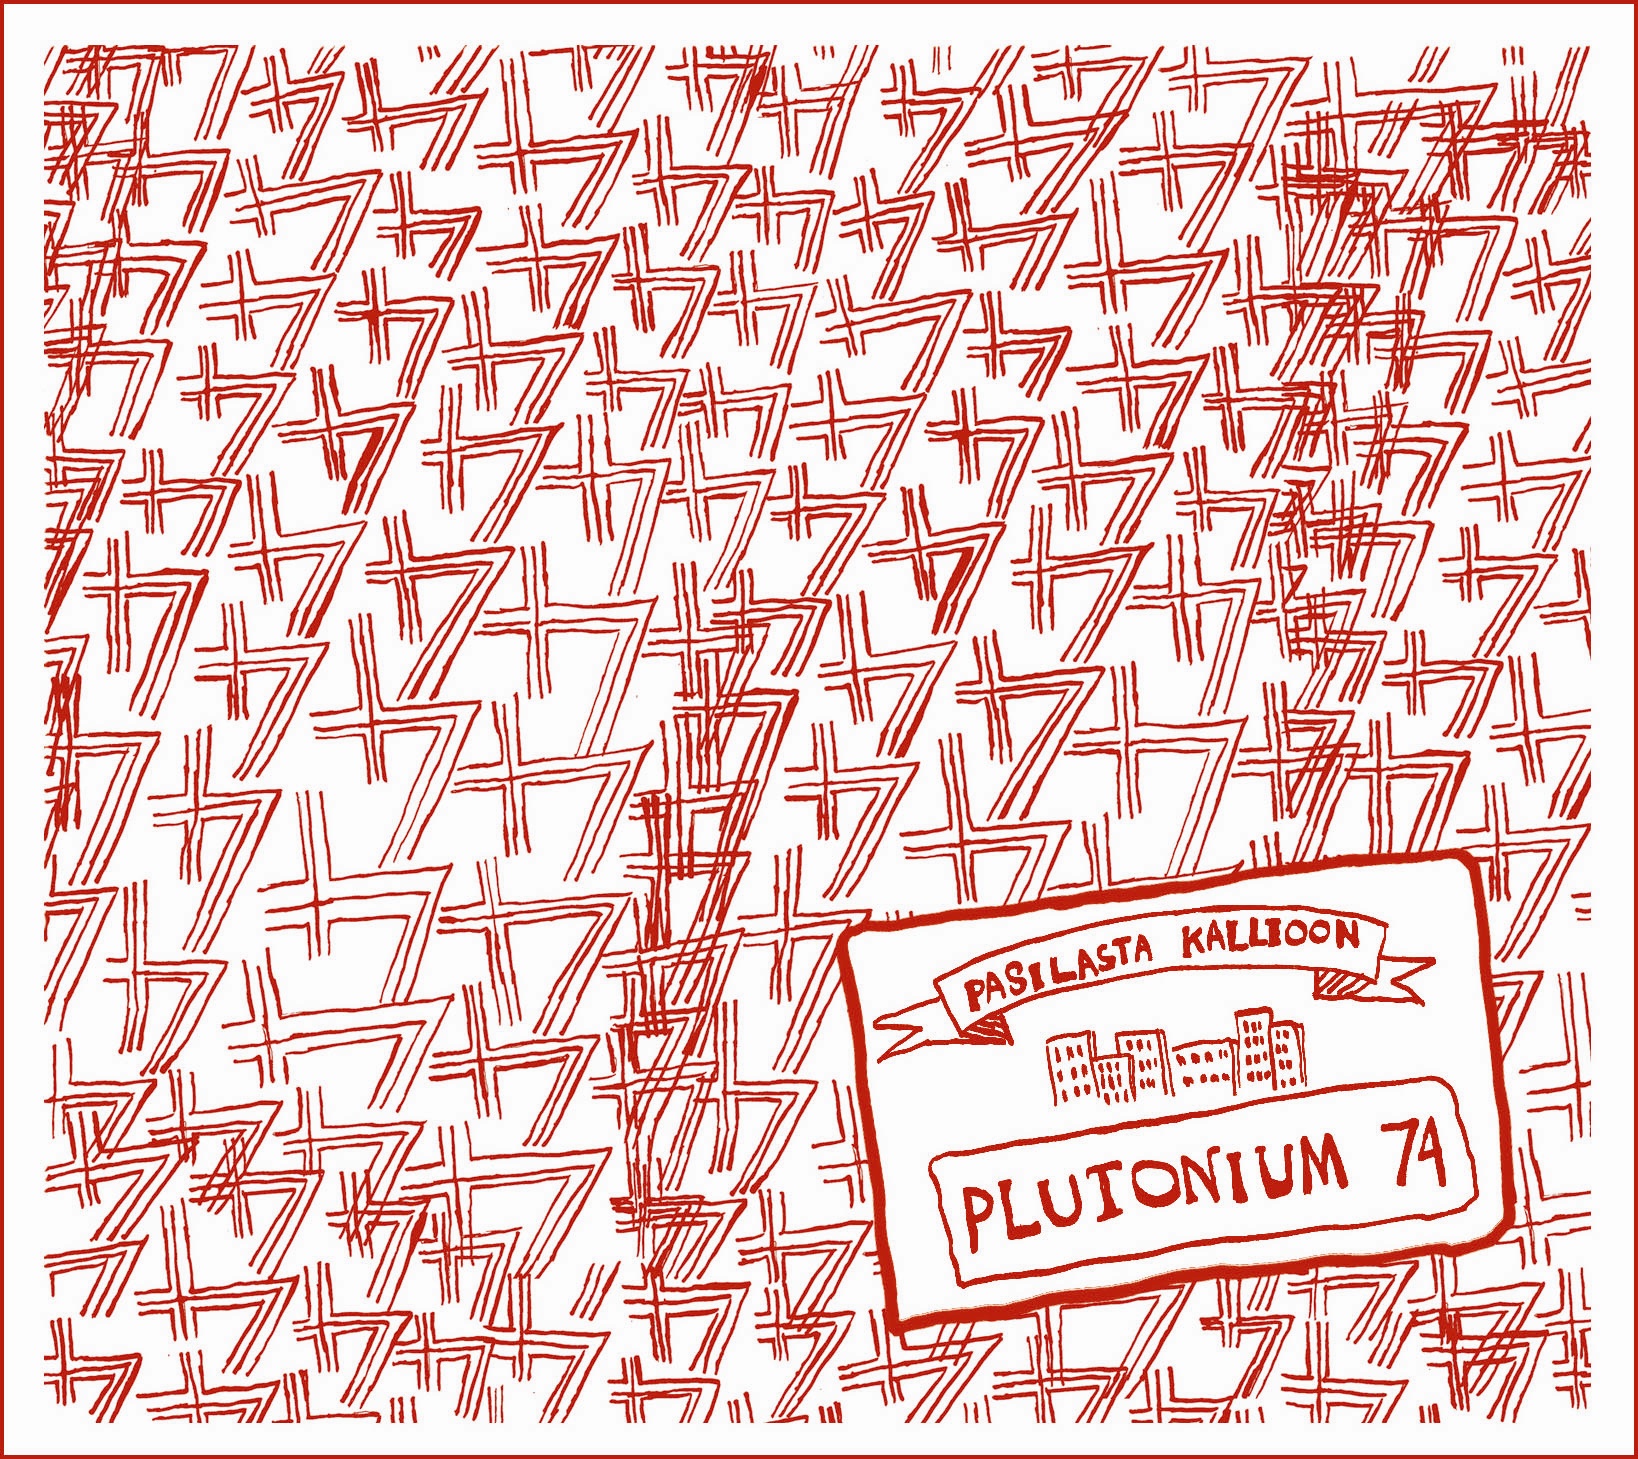 Plutonium 74 - Pasilasta Kallioon - CD